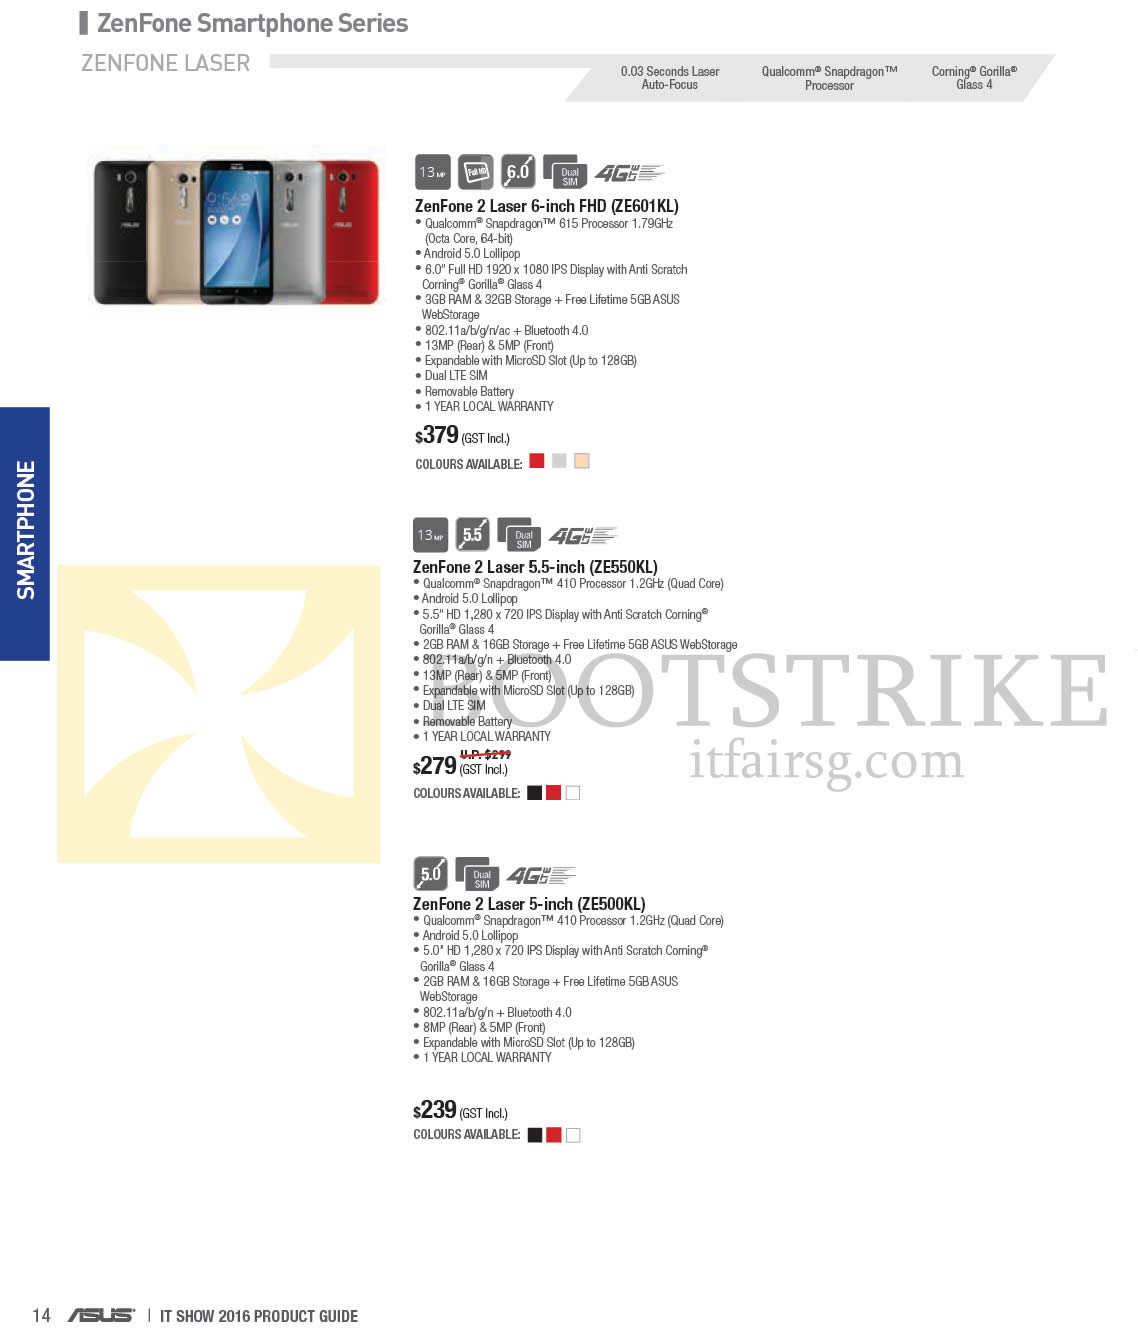 IT SHOW 2016 price list image brochure of ASUS Smartphones Zenfone 2 ZE601KL, ZE550KL, ZE500KL